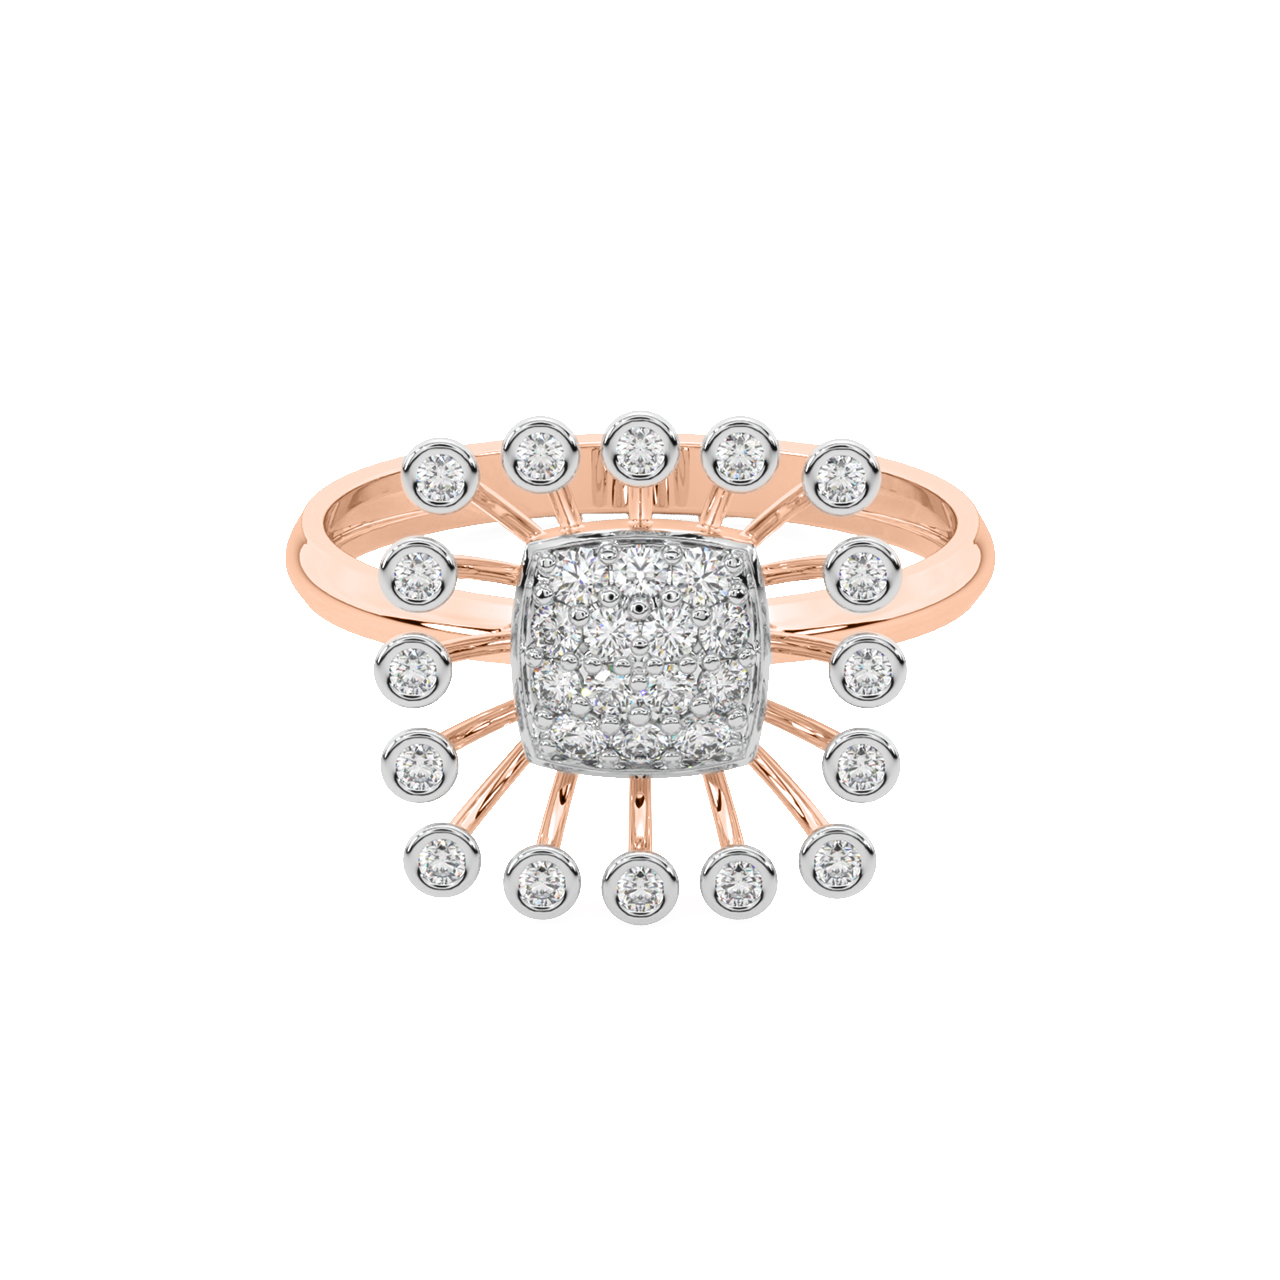 Josiah Diamond Engagement Ring